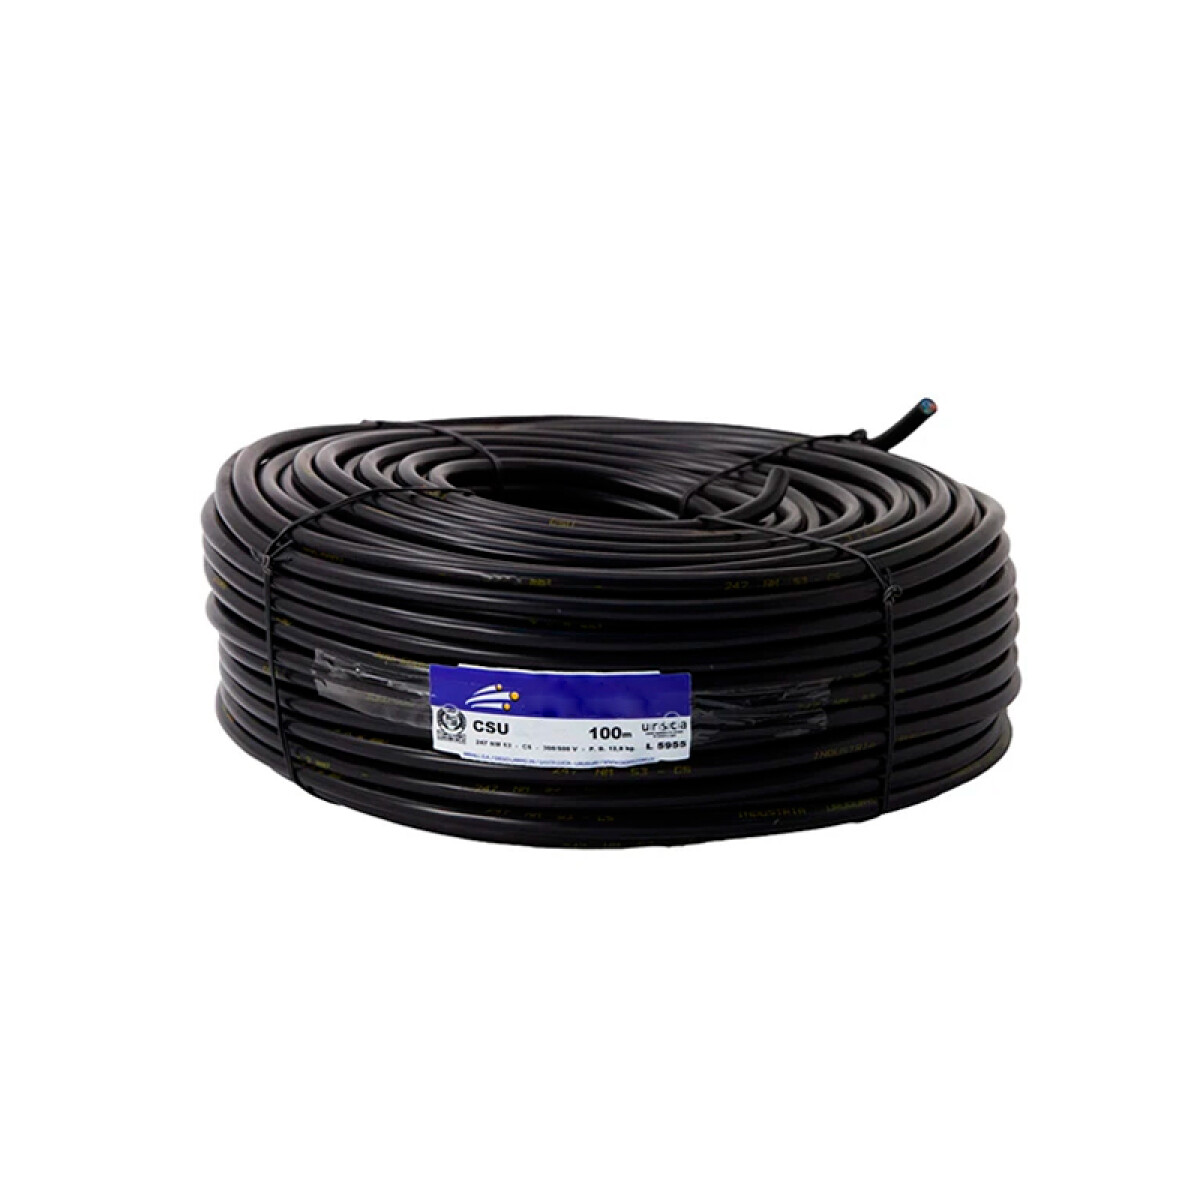 Cable Bajo Goma CSU 2x2 mm 